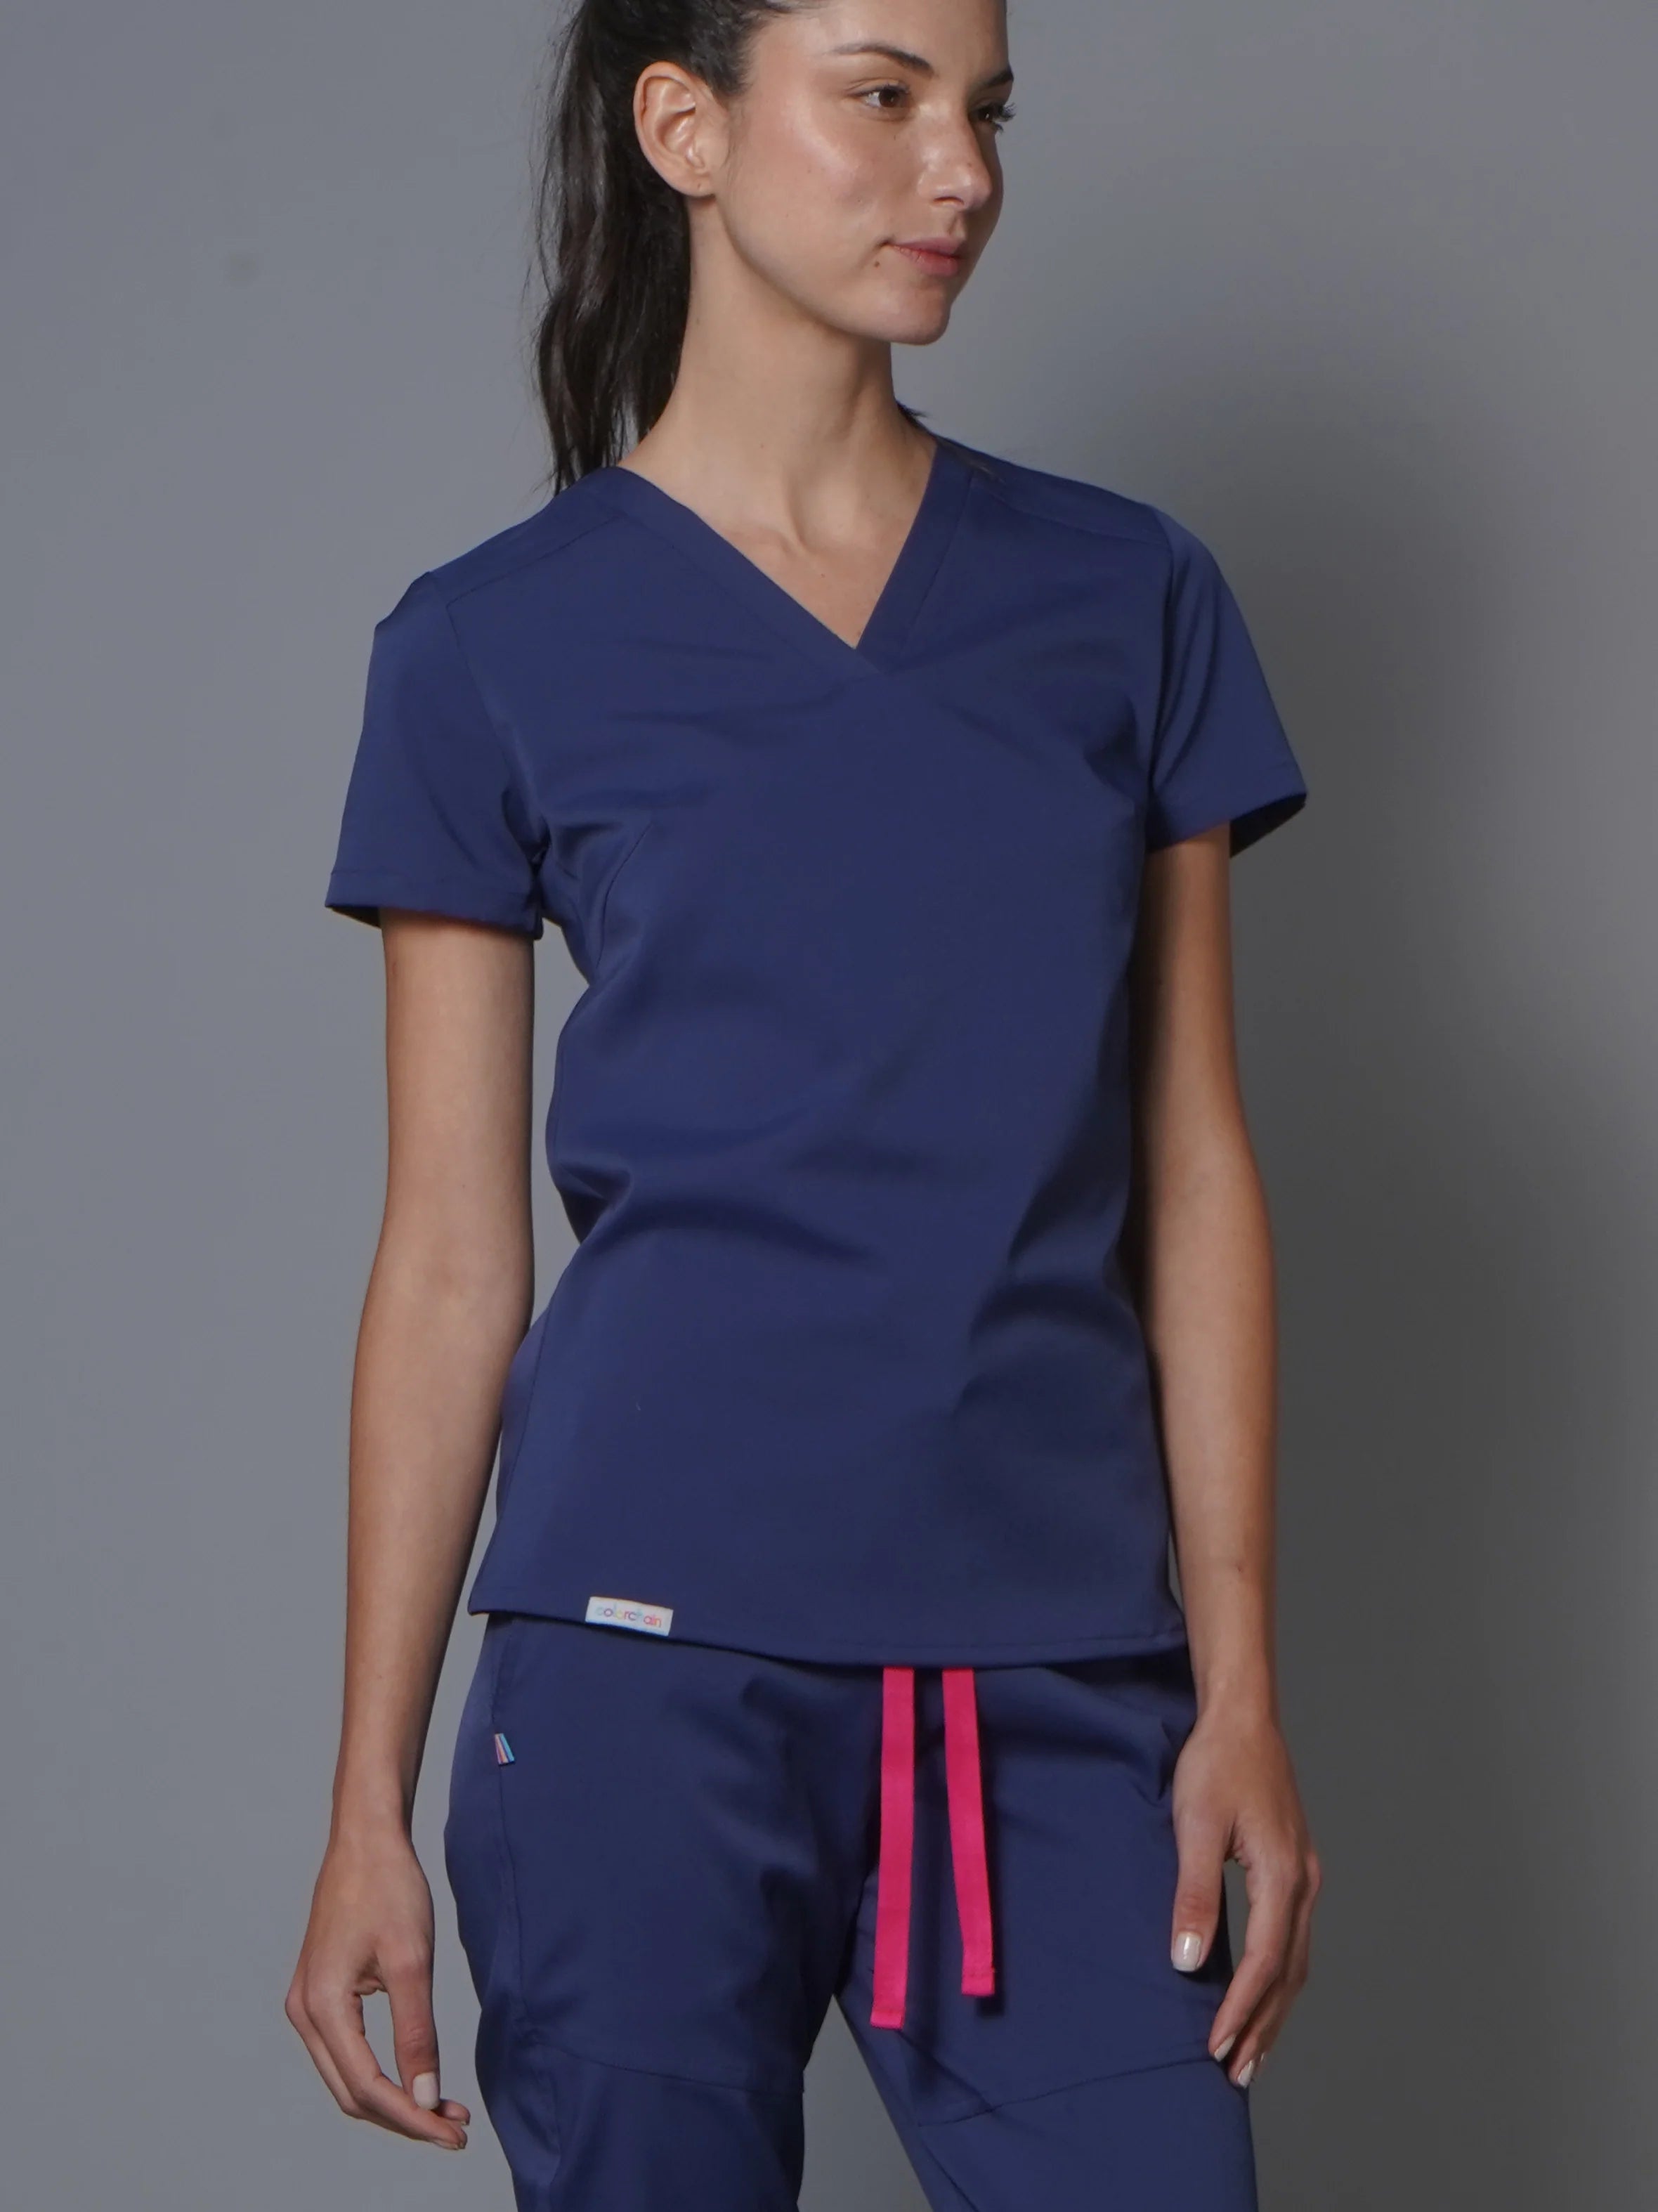 Top Marsella Cobalto. Top uniforme médico para mujer.